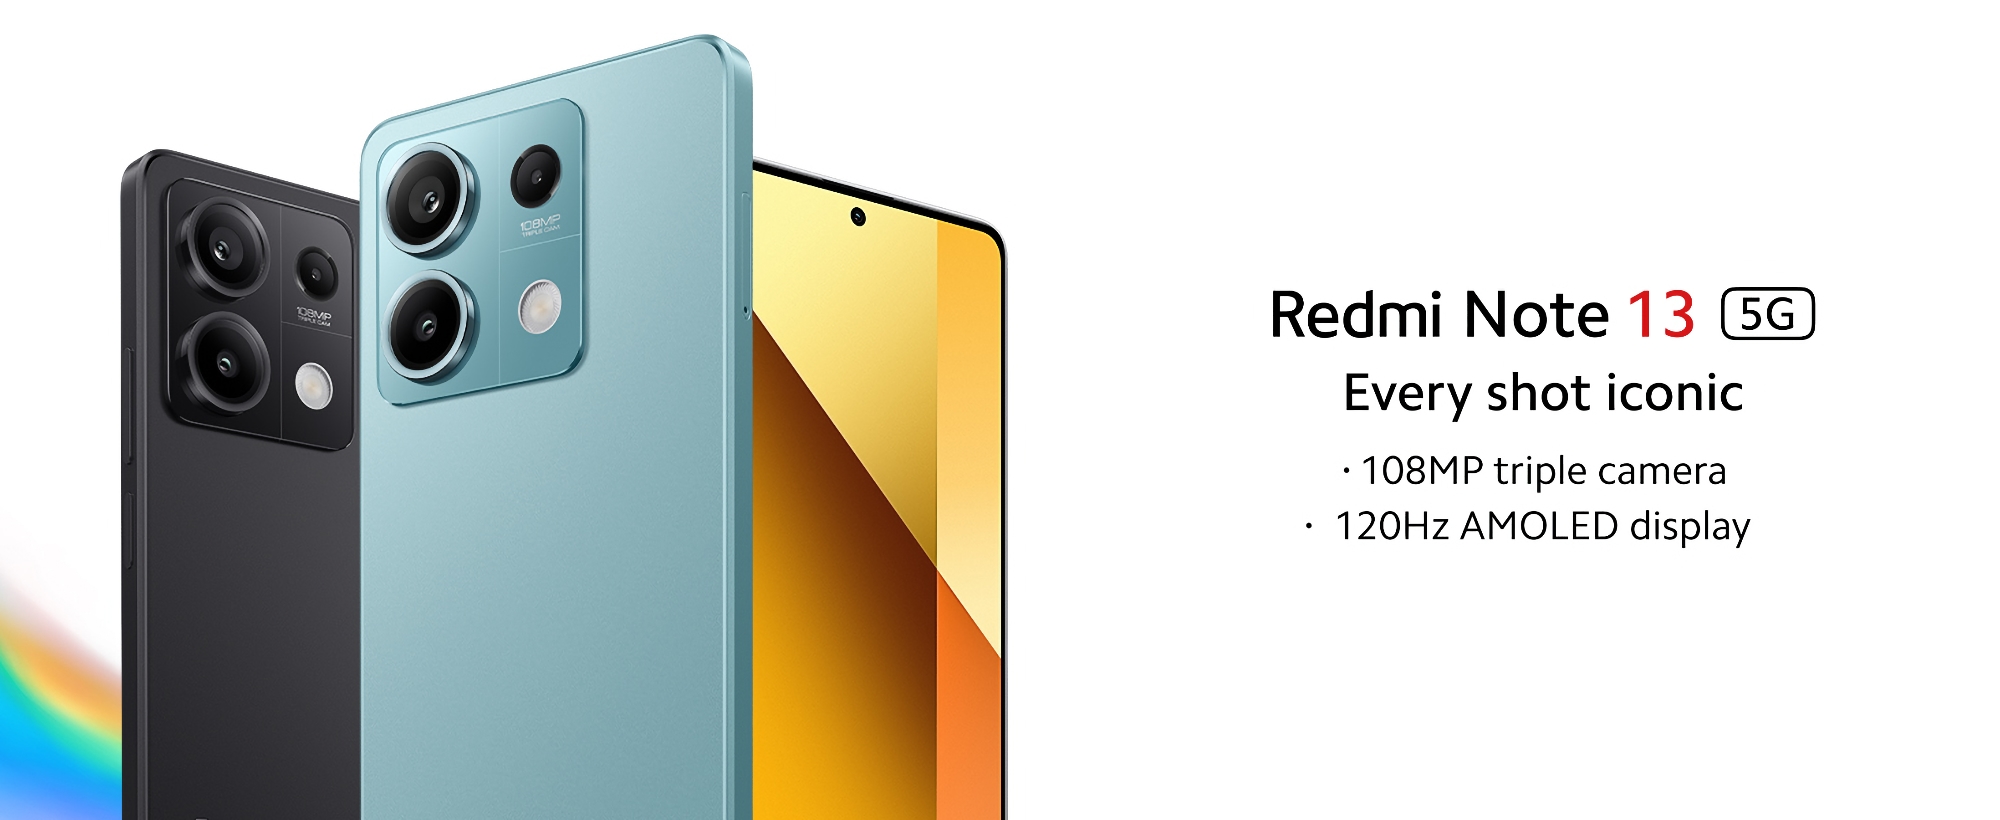 Xiaomi wprowadziło Redmi Note 13 5G na globalny rynek